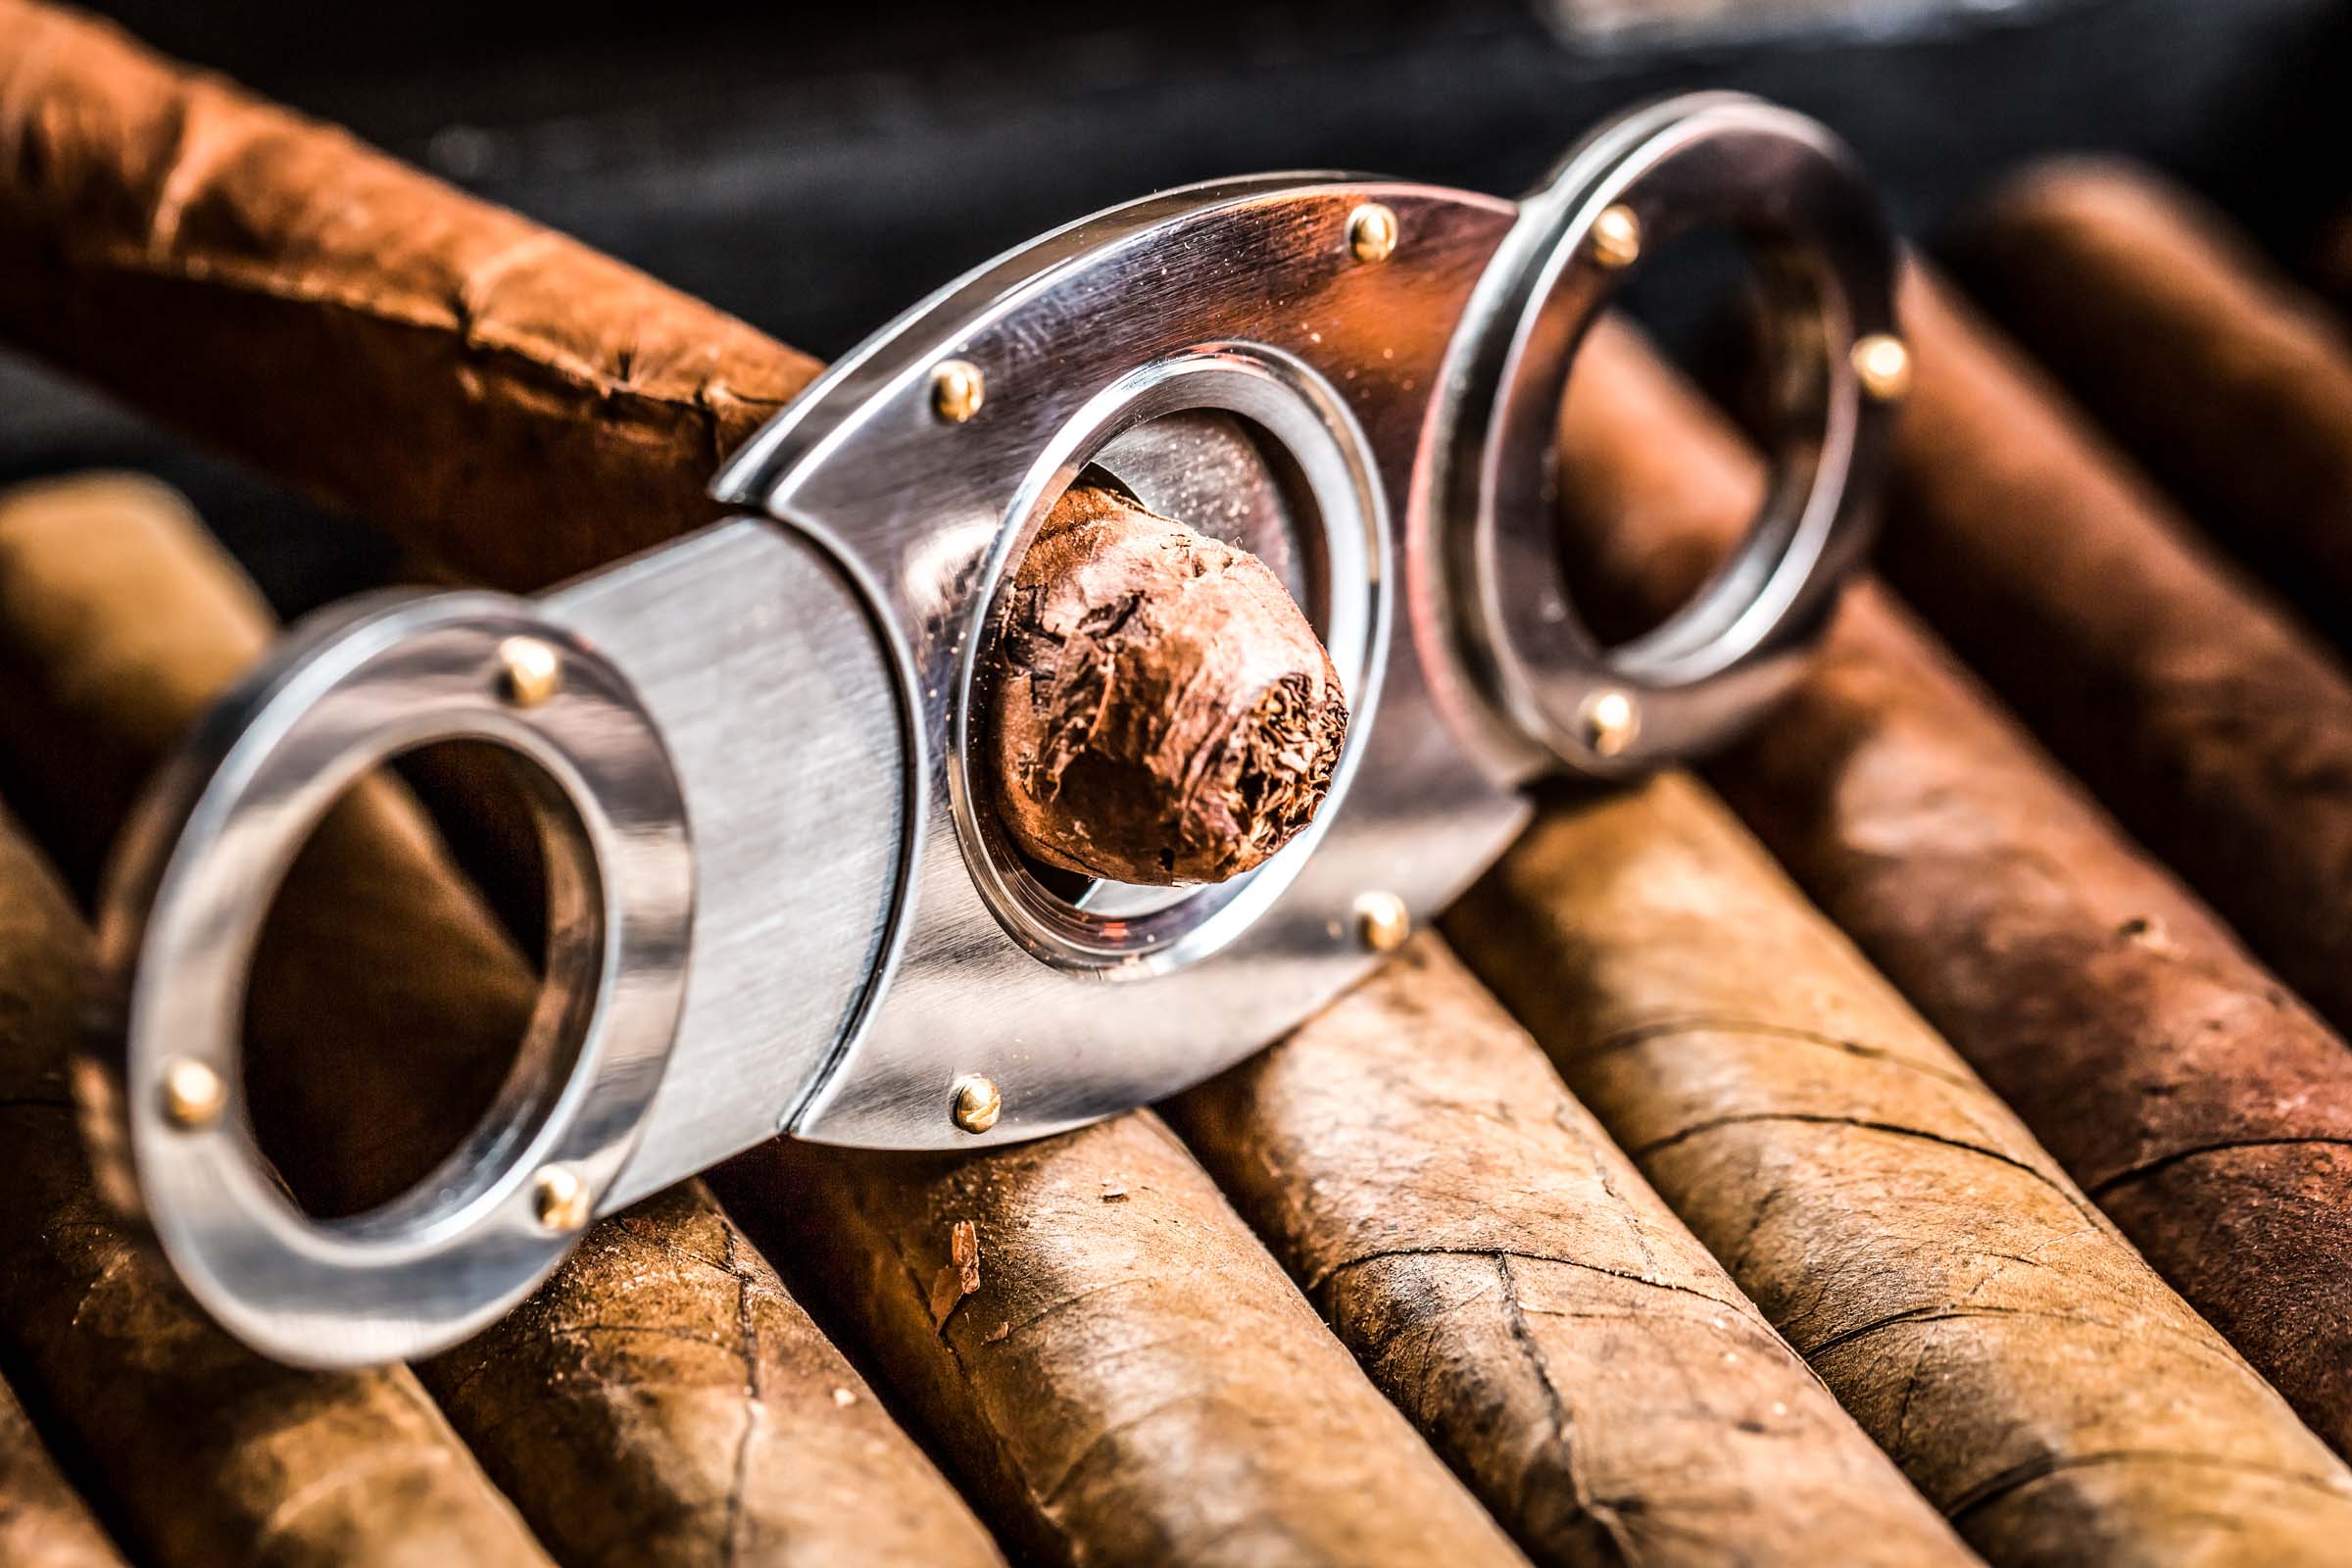 Zigarrendreher | Zigarrenroller | Kuba | Tabak | Deckblatt | Handgedreht | Havanna | Zigarre | Bandarolle | Umblatt | Buchen | Event | Zigarrenmanufaktur